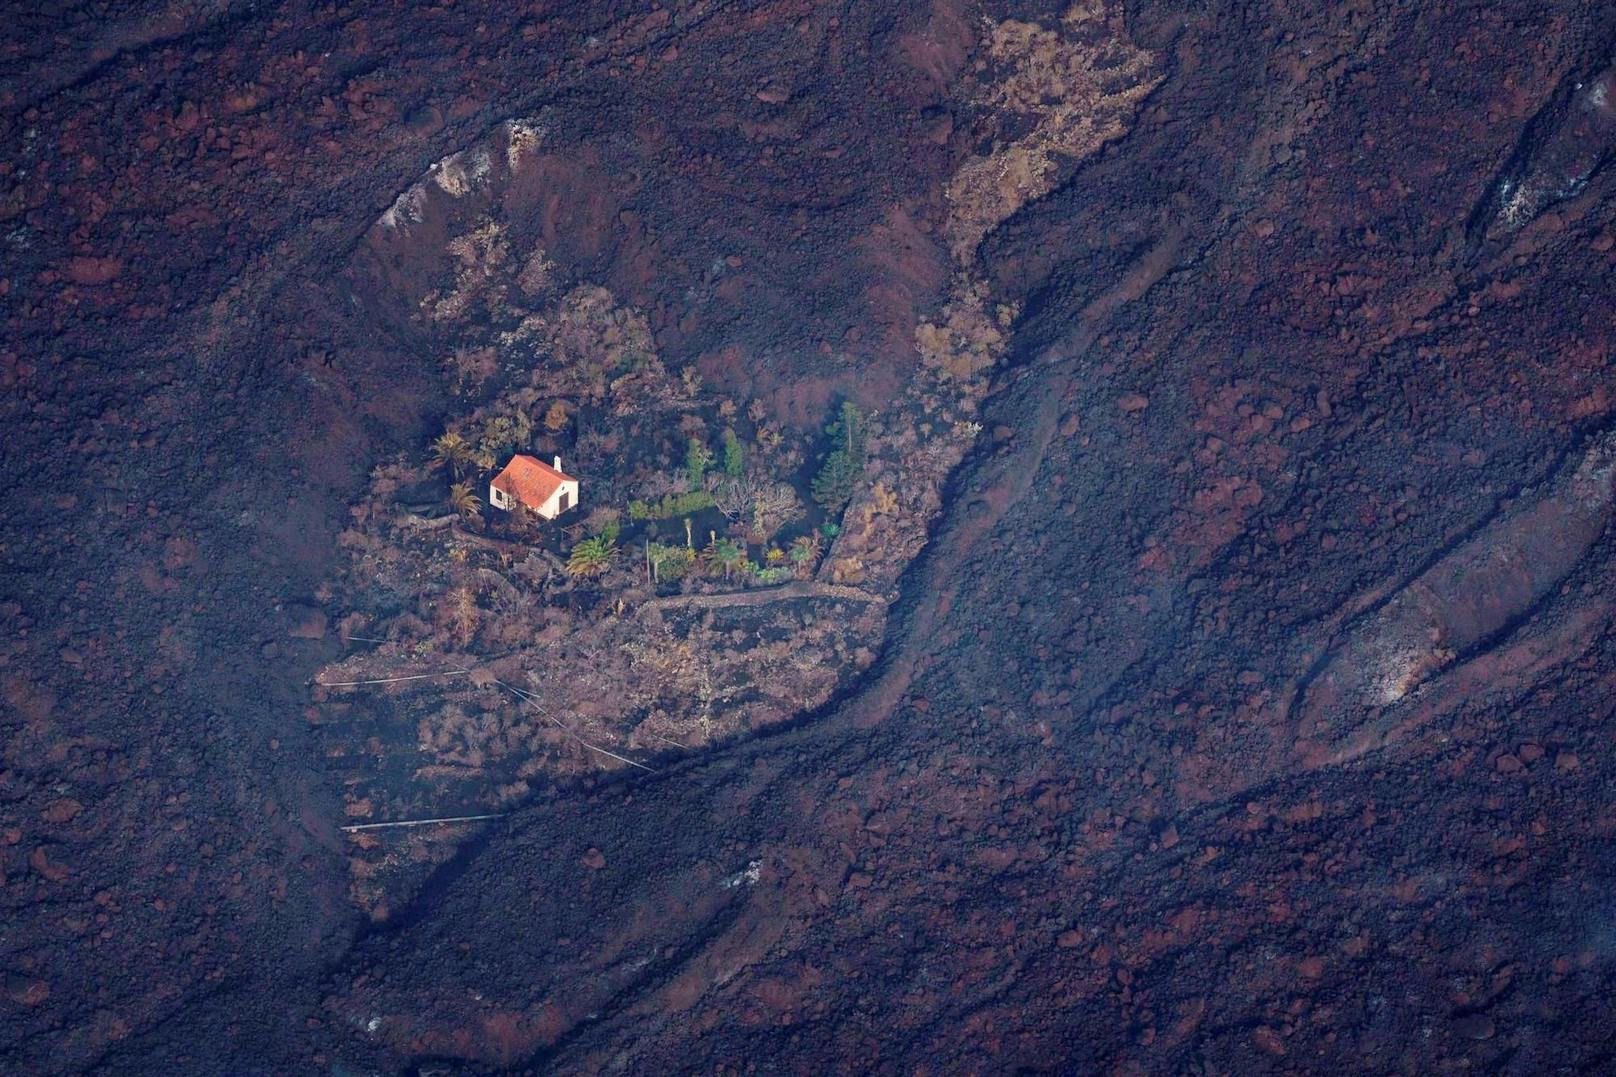 Nach dem Vulkanausbruch von La Palma feiert das Netz das Gebäude als "Wunderhaus" von La Palma.